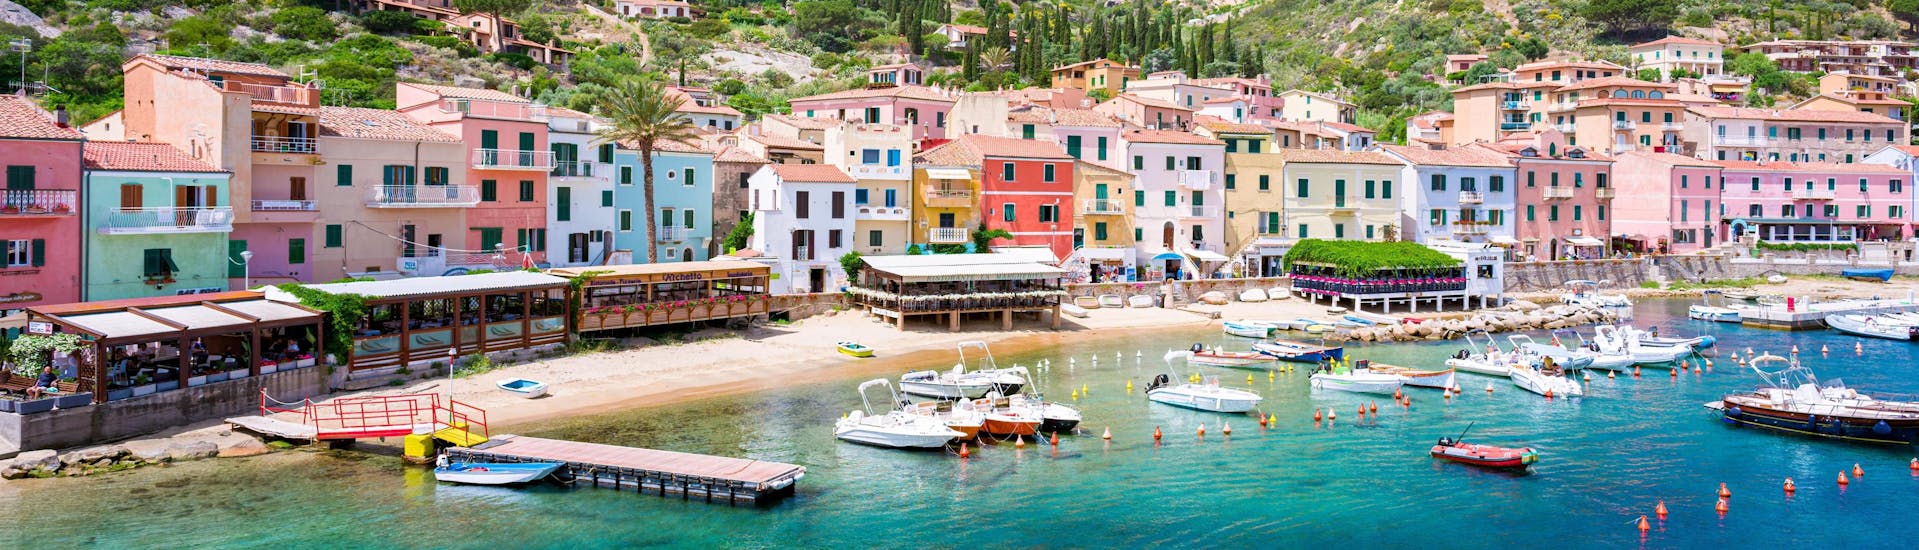 Vue sur le port de Giglio, un endroit magnifique que vous pouvez visiter lors d'une excursion en bateau dans l'archipel toscan.